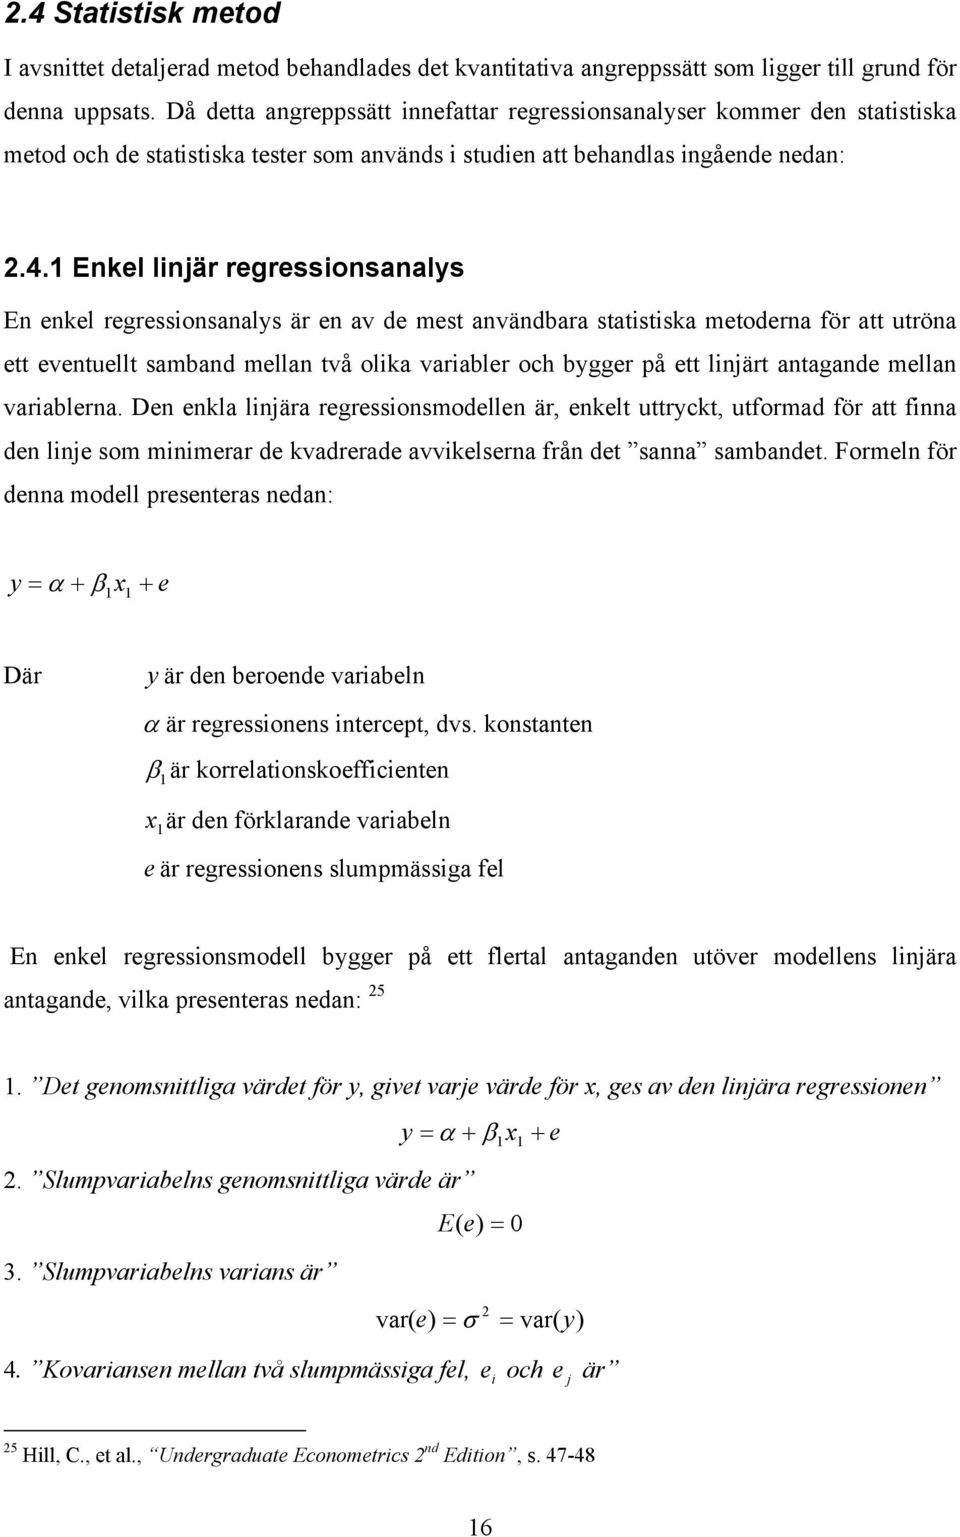 1 Enkel linjär regressionsanalys En enkel regressionsanalys är en av de mes användbara saisiska meoderna för a uröna e evenuell samband mellan vå olika variabler och bygger på e linjär anagande